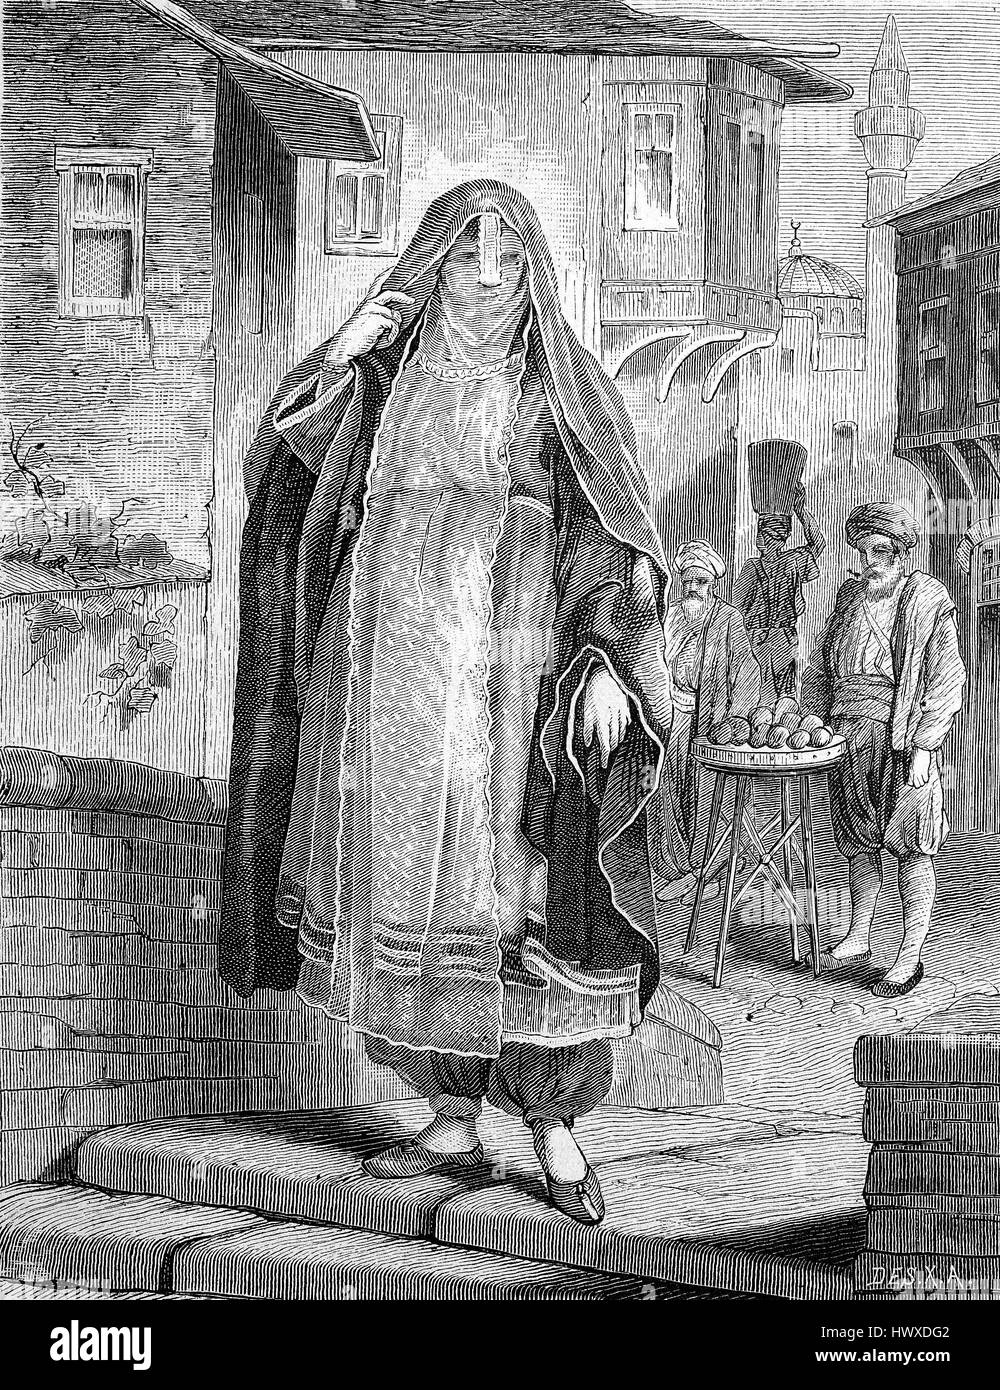 Eine ägyptische Frau trägt ein Kleid zu gehen und einen Niqab, Schleier, verbessert, Ägypten, Reproduktion eines Bildes, Holzschnitt aus dem Jahr 1881, digital Stockfoto